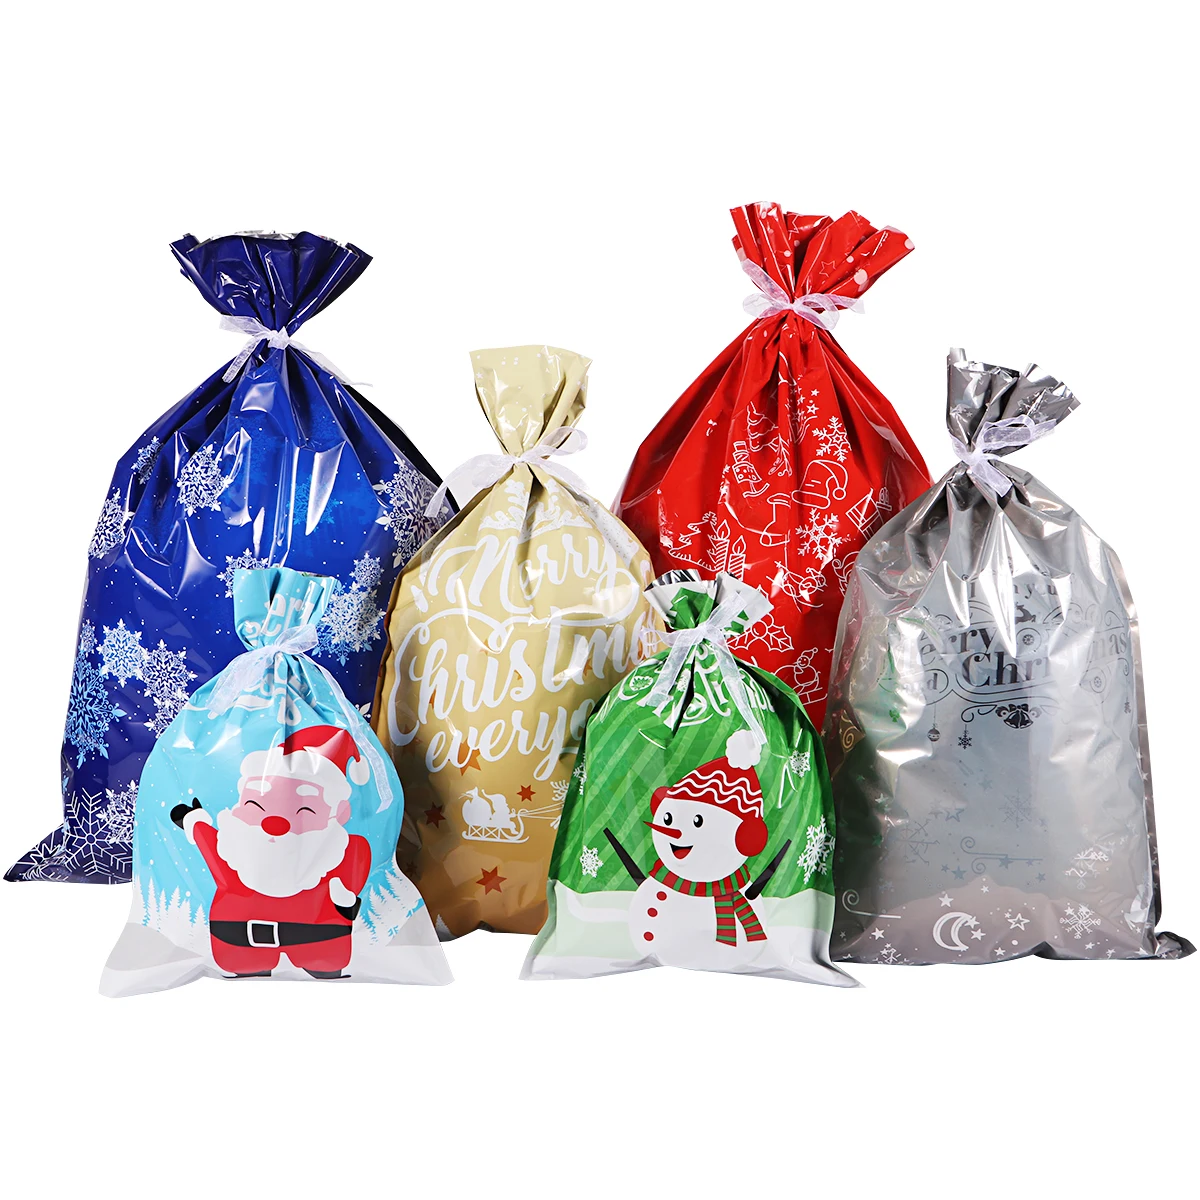 30 шт., рождественские подарочные сумки, красочные, ассорти, уникальные сумки, вечерние, подарочные обертки, сумки для упаковки подарков на Рождество, свадьбу, день рождения